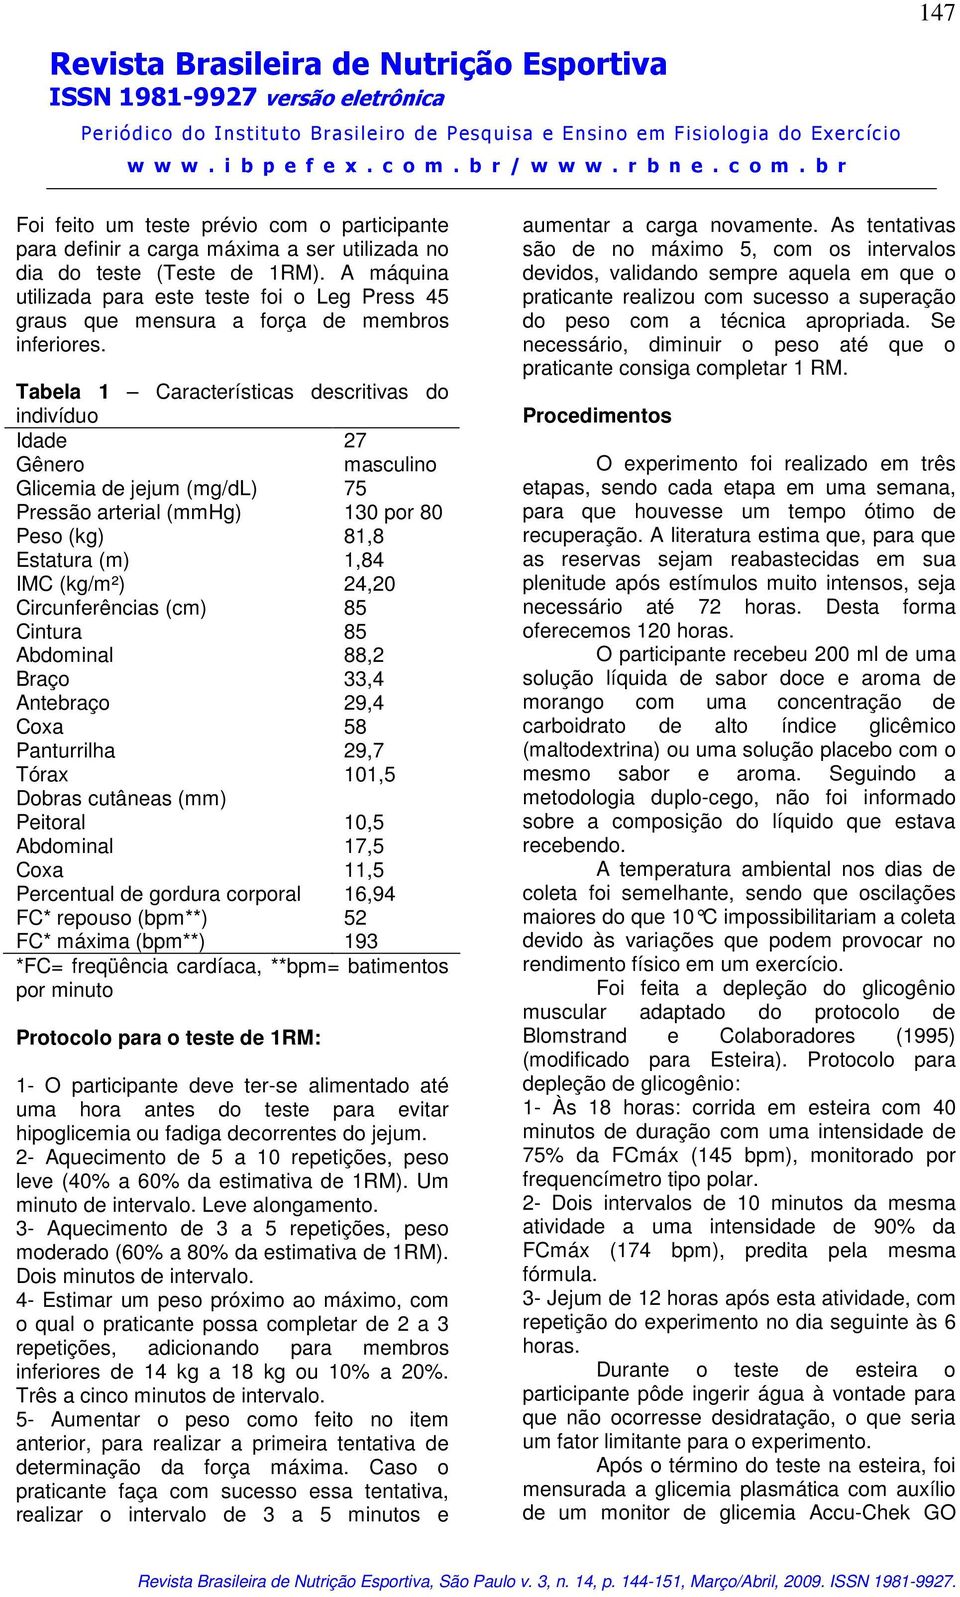 Tabela 1 Características descritivas do indivíduo Idade 27 Gênero masculino Glicemia de jejum (mg/dl) 75 Pressão arterial (mmhg) 130 por 80 Peso (kg) 81,8 Estatura (m) 1,84 IMC (kg/m²) 24,20